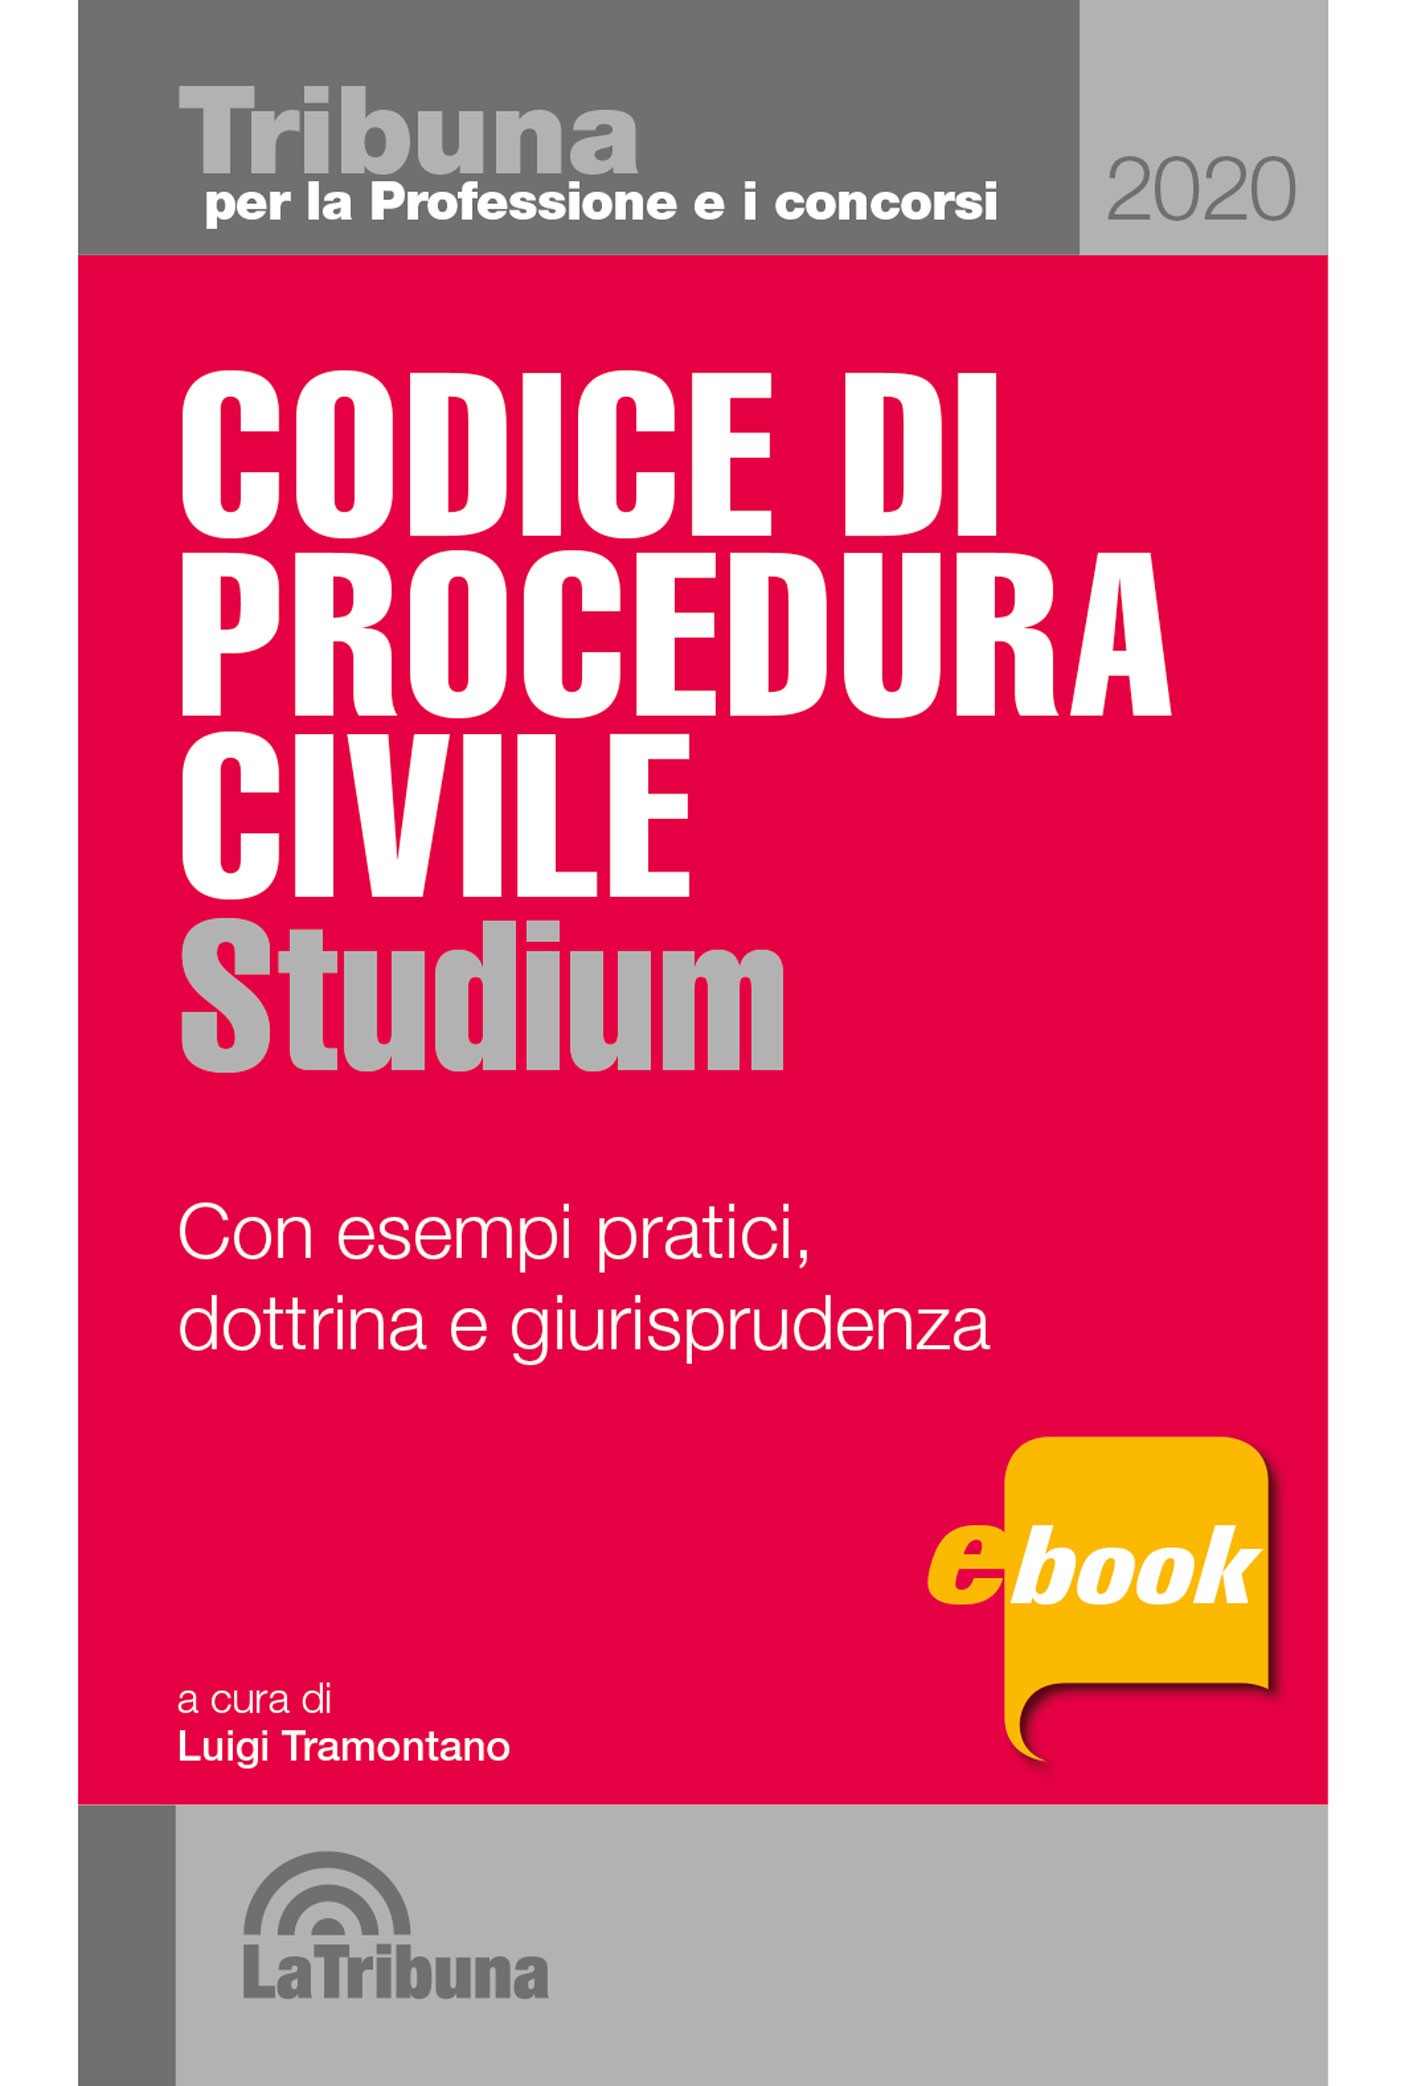 Codice di procedura civile studium - Librerie.coop